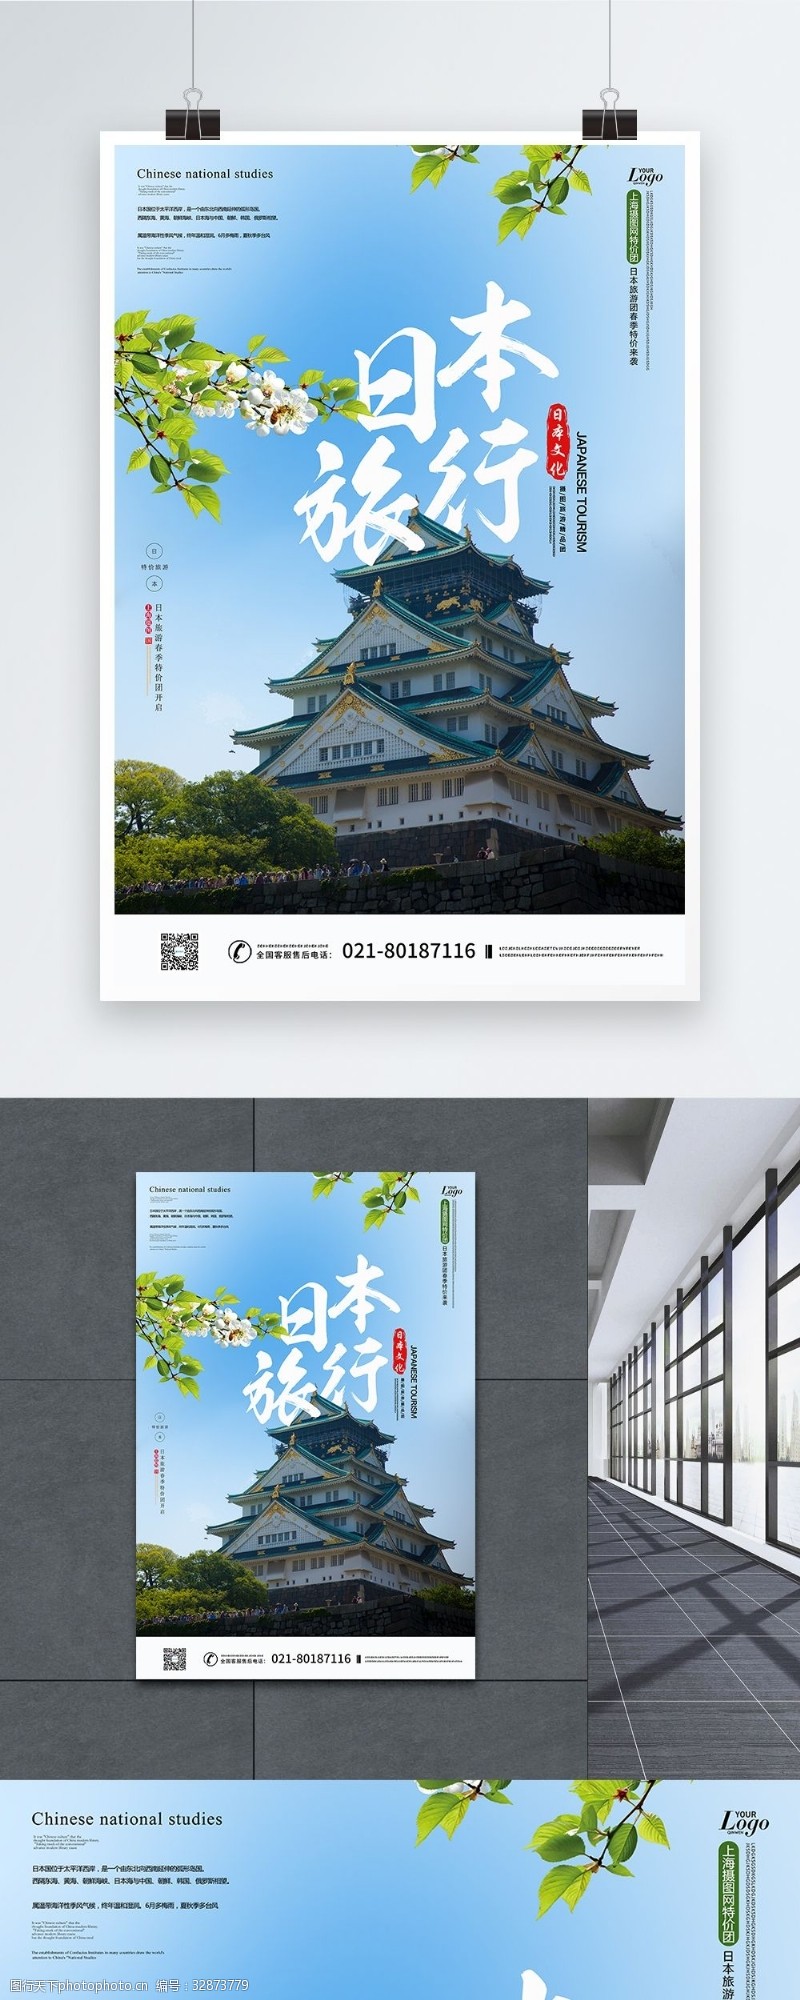 日本旅游路线日本特价团旅游线路推广海报